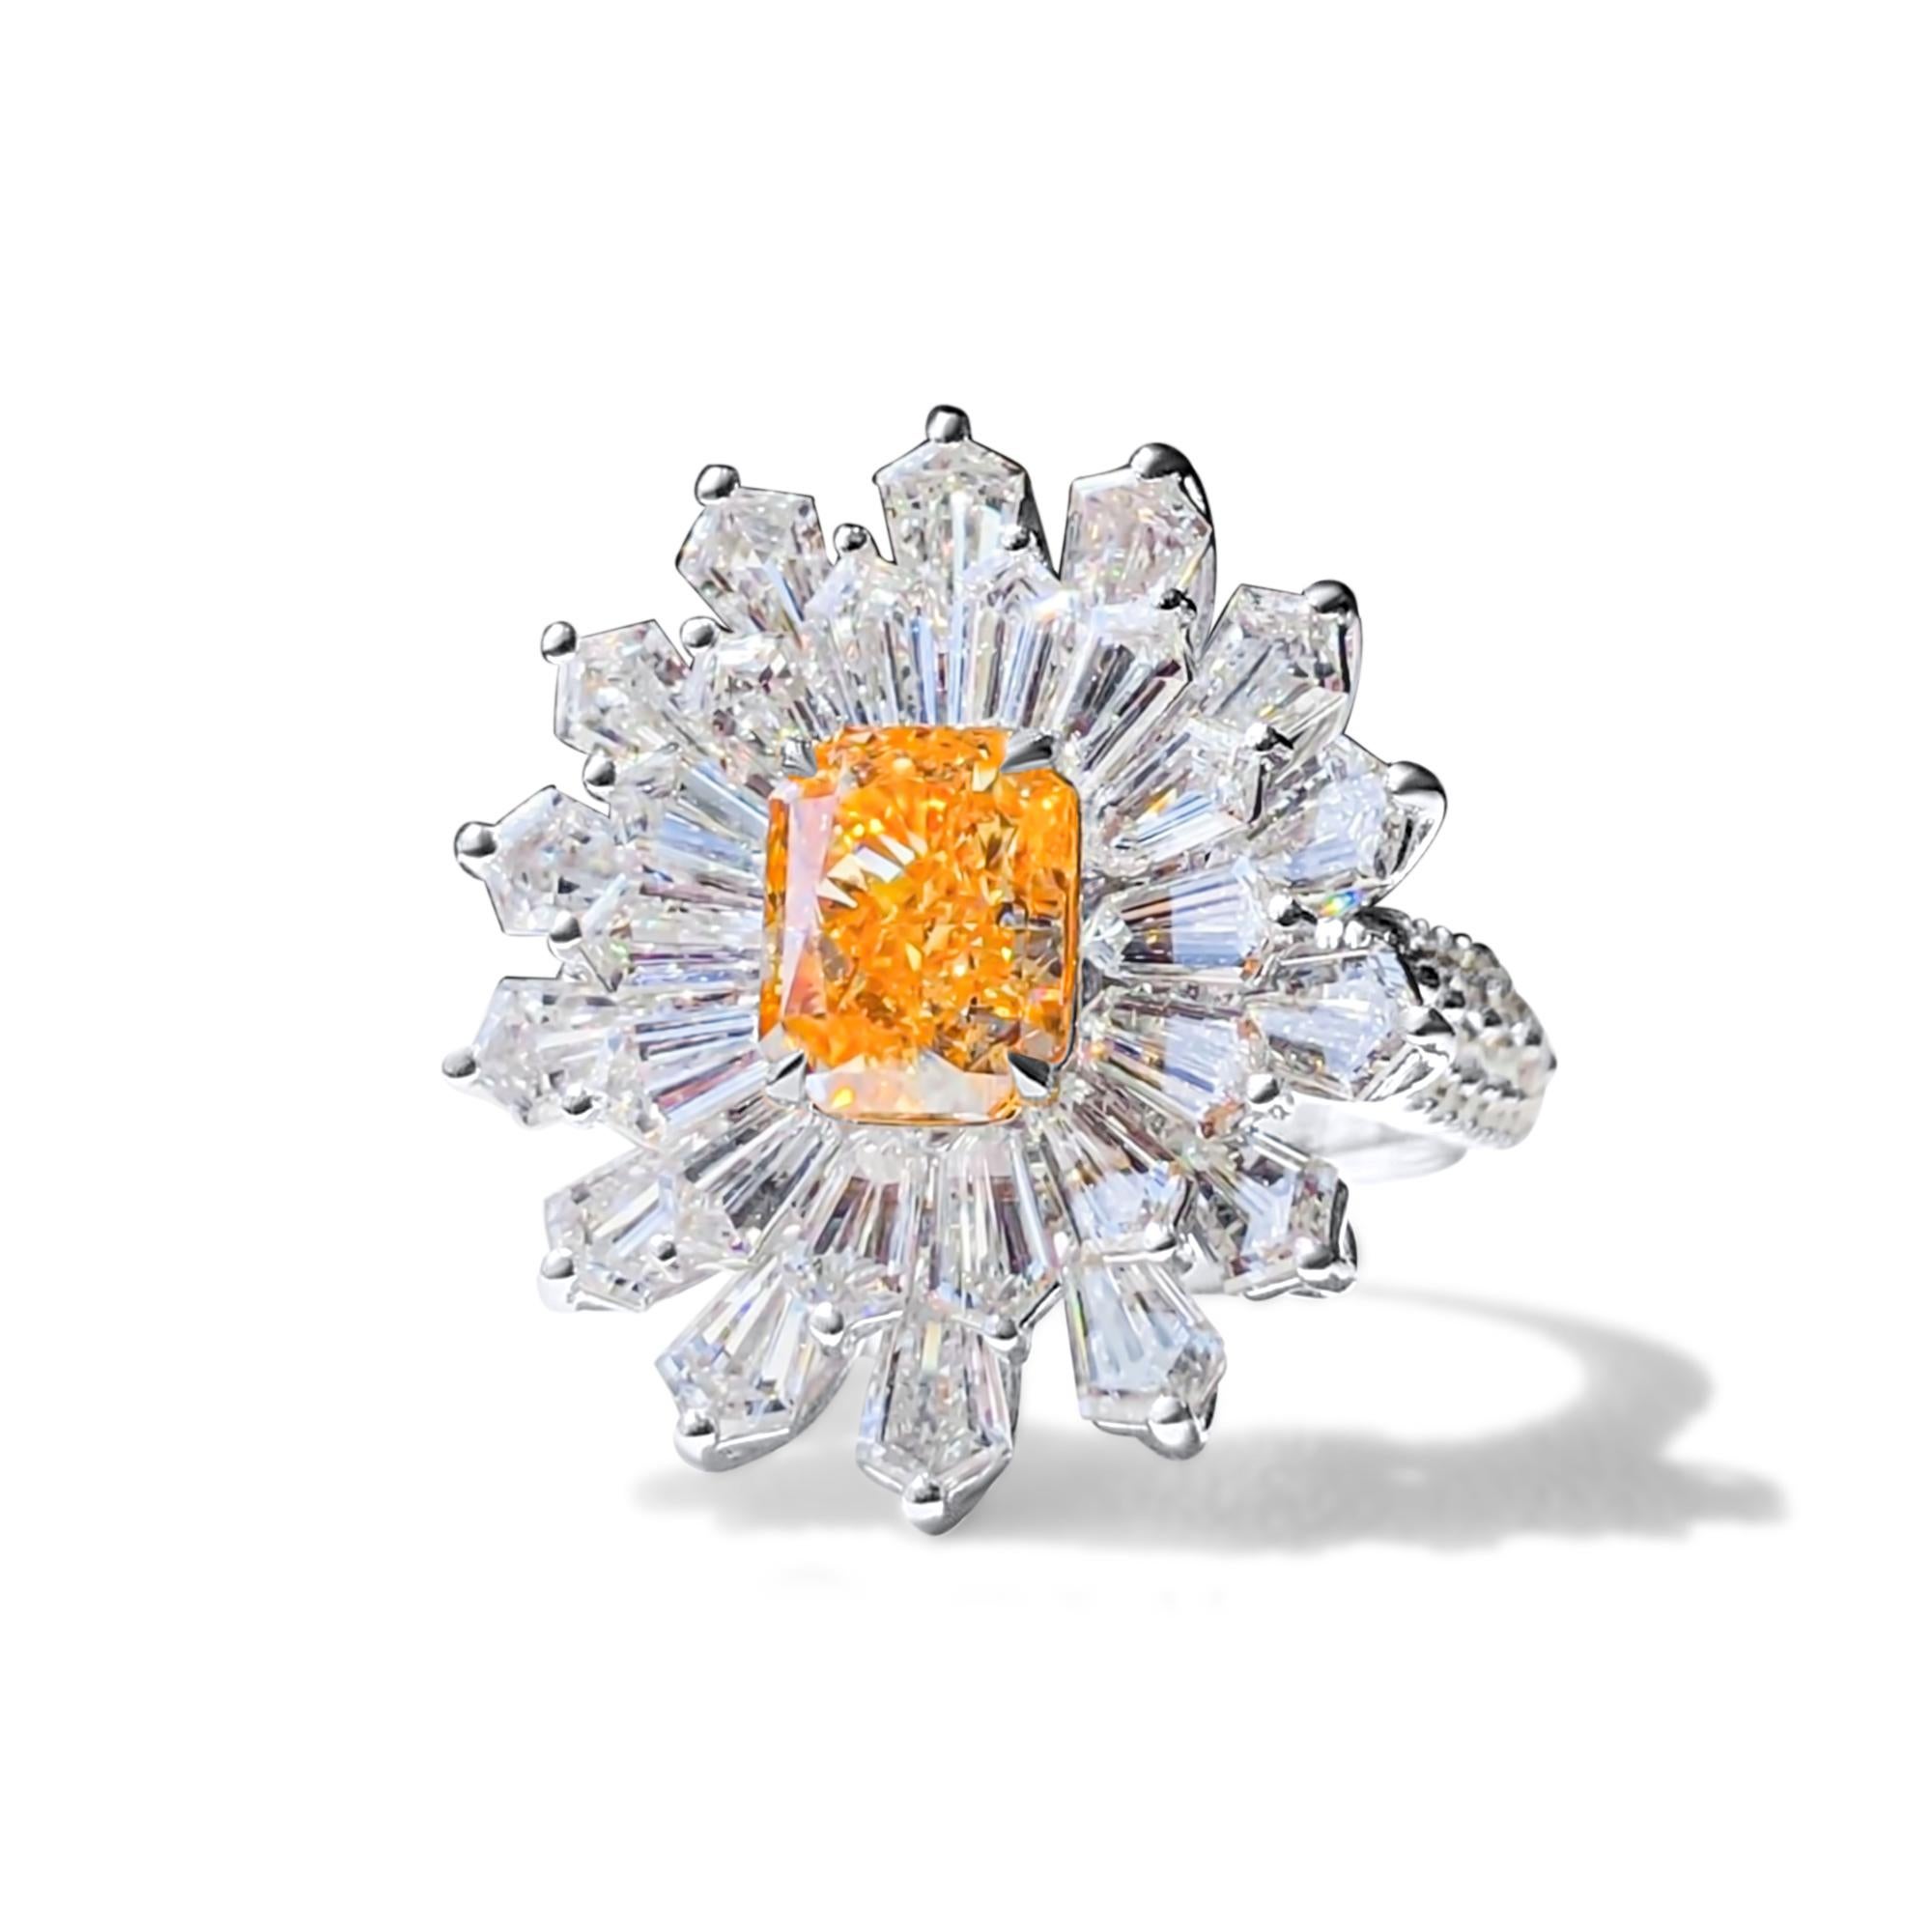 Wir laden Sie ein, diesen charmanten Ring mit einem 2,02 Karat GIA-zertifizierten orangefarbenen Diamanten zu entdecken, der mit farblosen Baguette-Diamanten von insgesamt 3 Karat besetzt ist. Vielseitig, auch als prächtiger Anhänger zu tragen